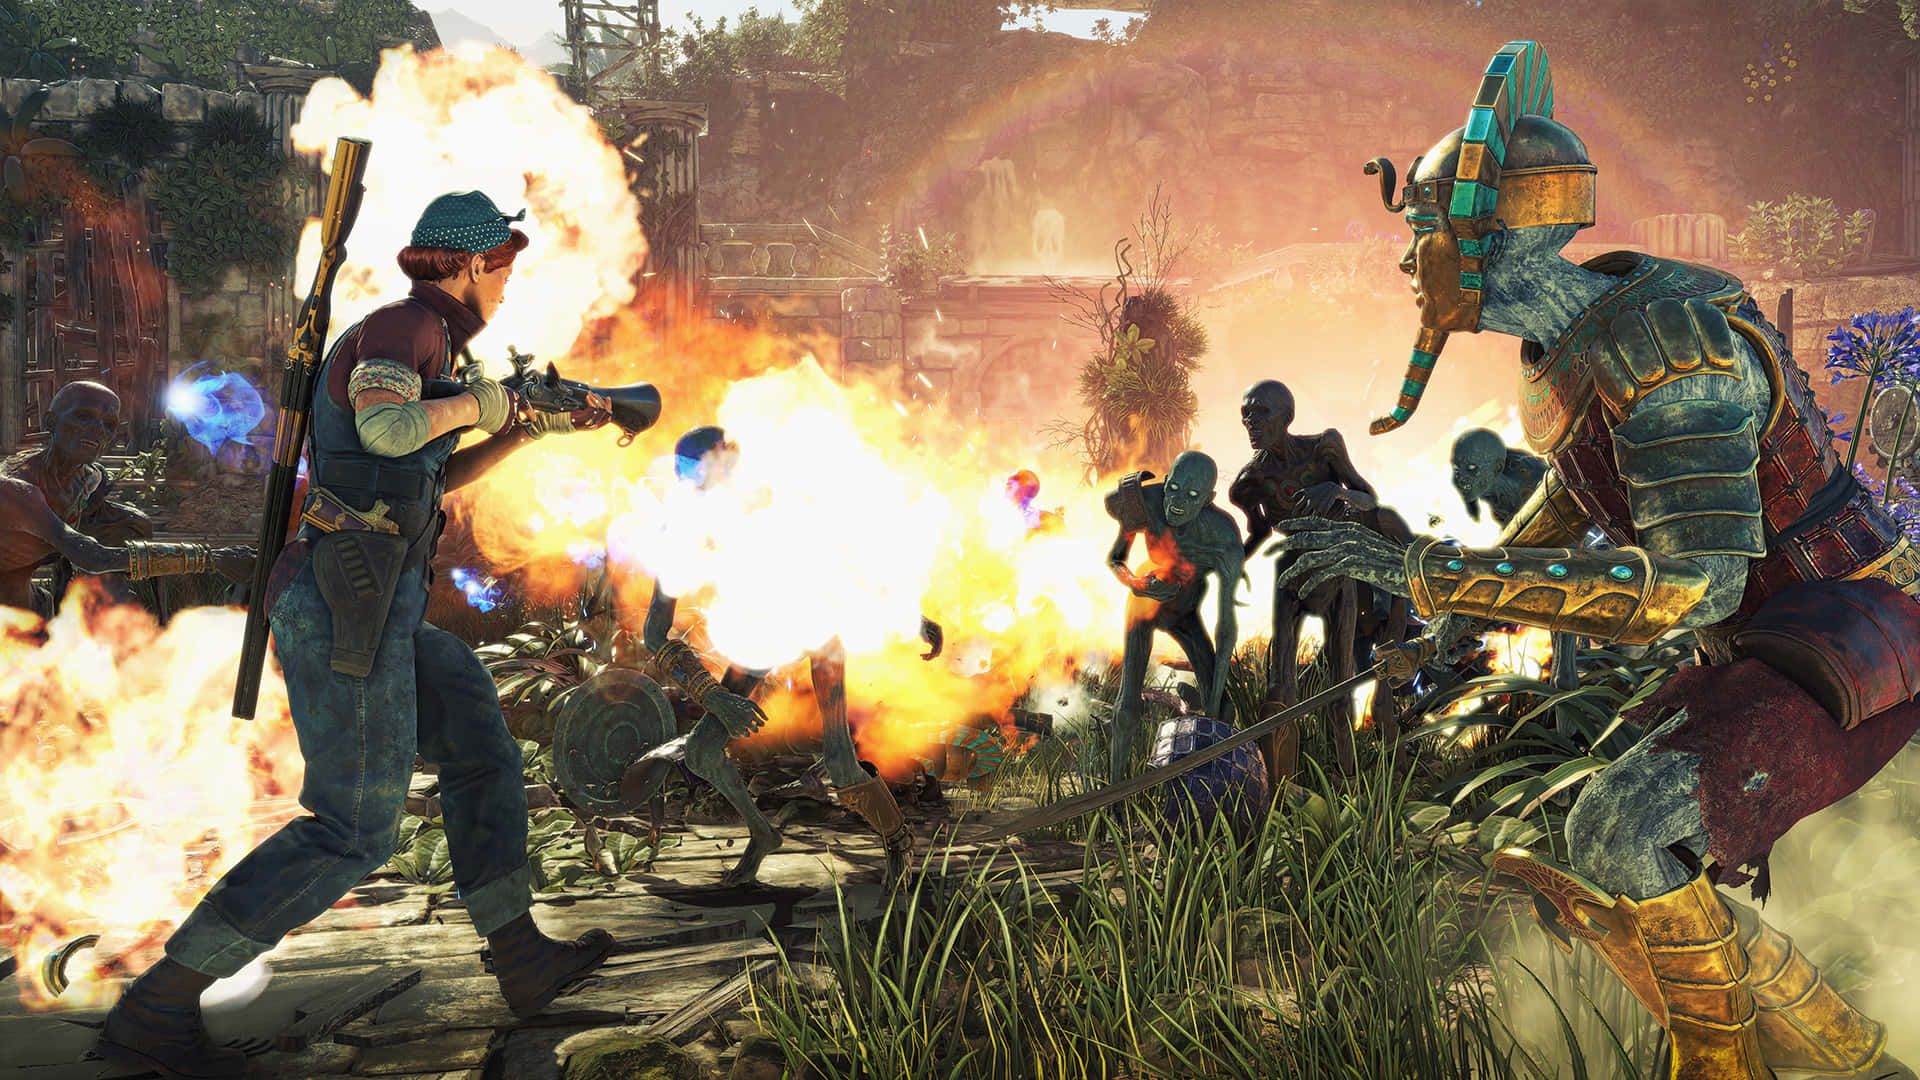 Einegruppe Von Zombies Kämpft In Einem Videospiel.